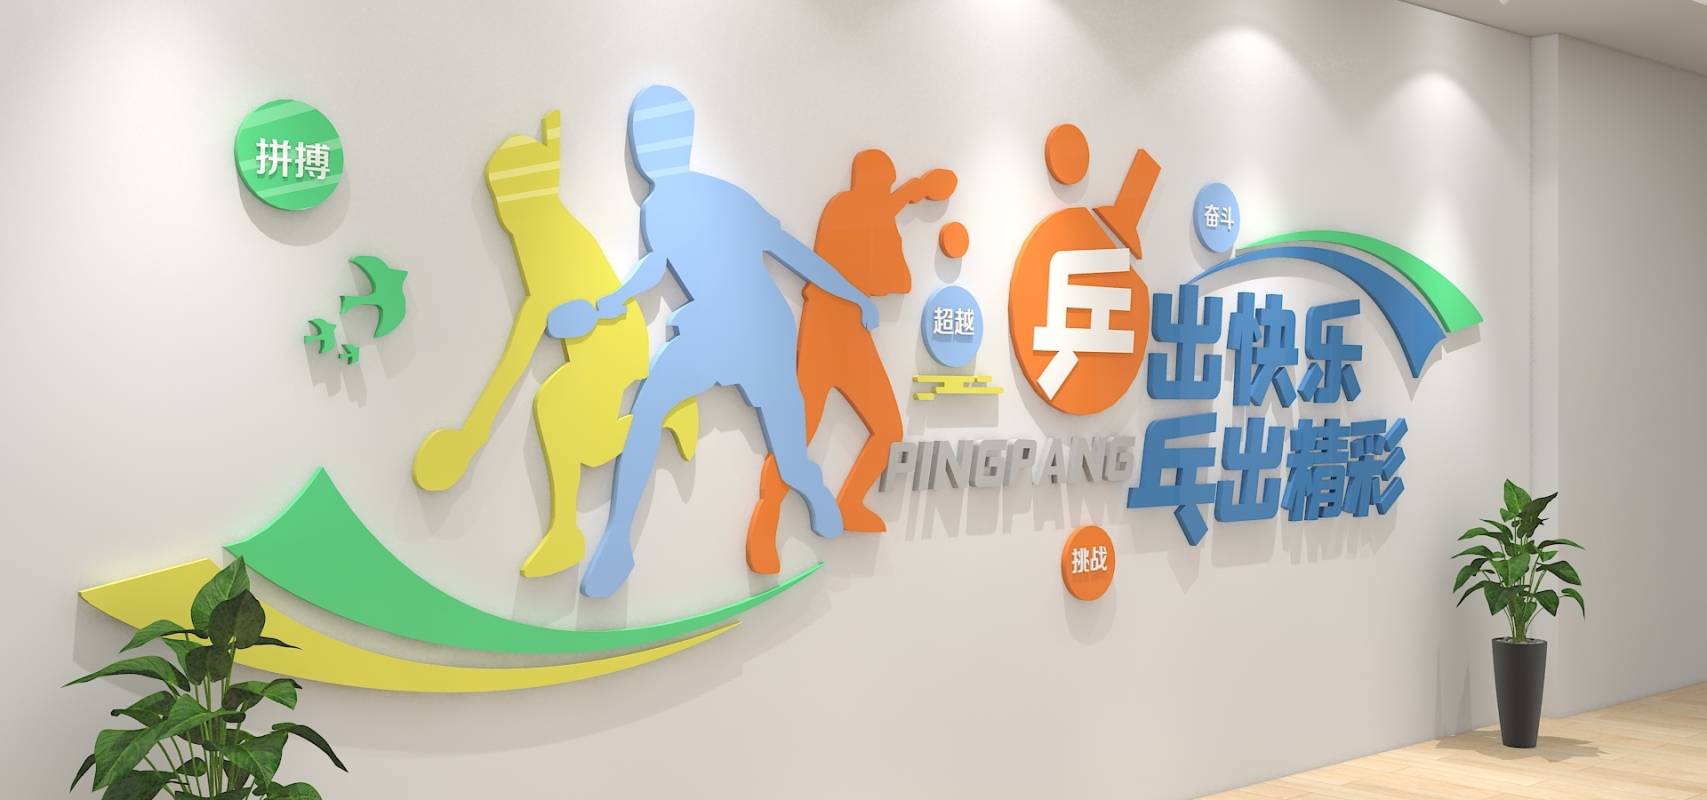 乒乓球运动文化墙简约体育馆校园效果图标语